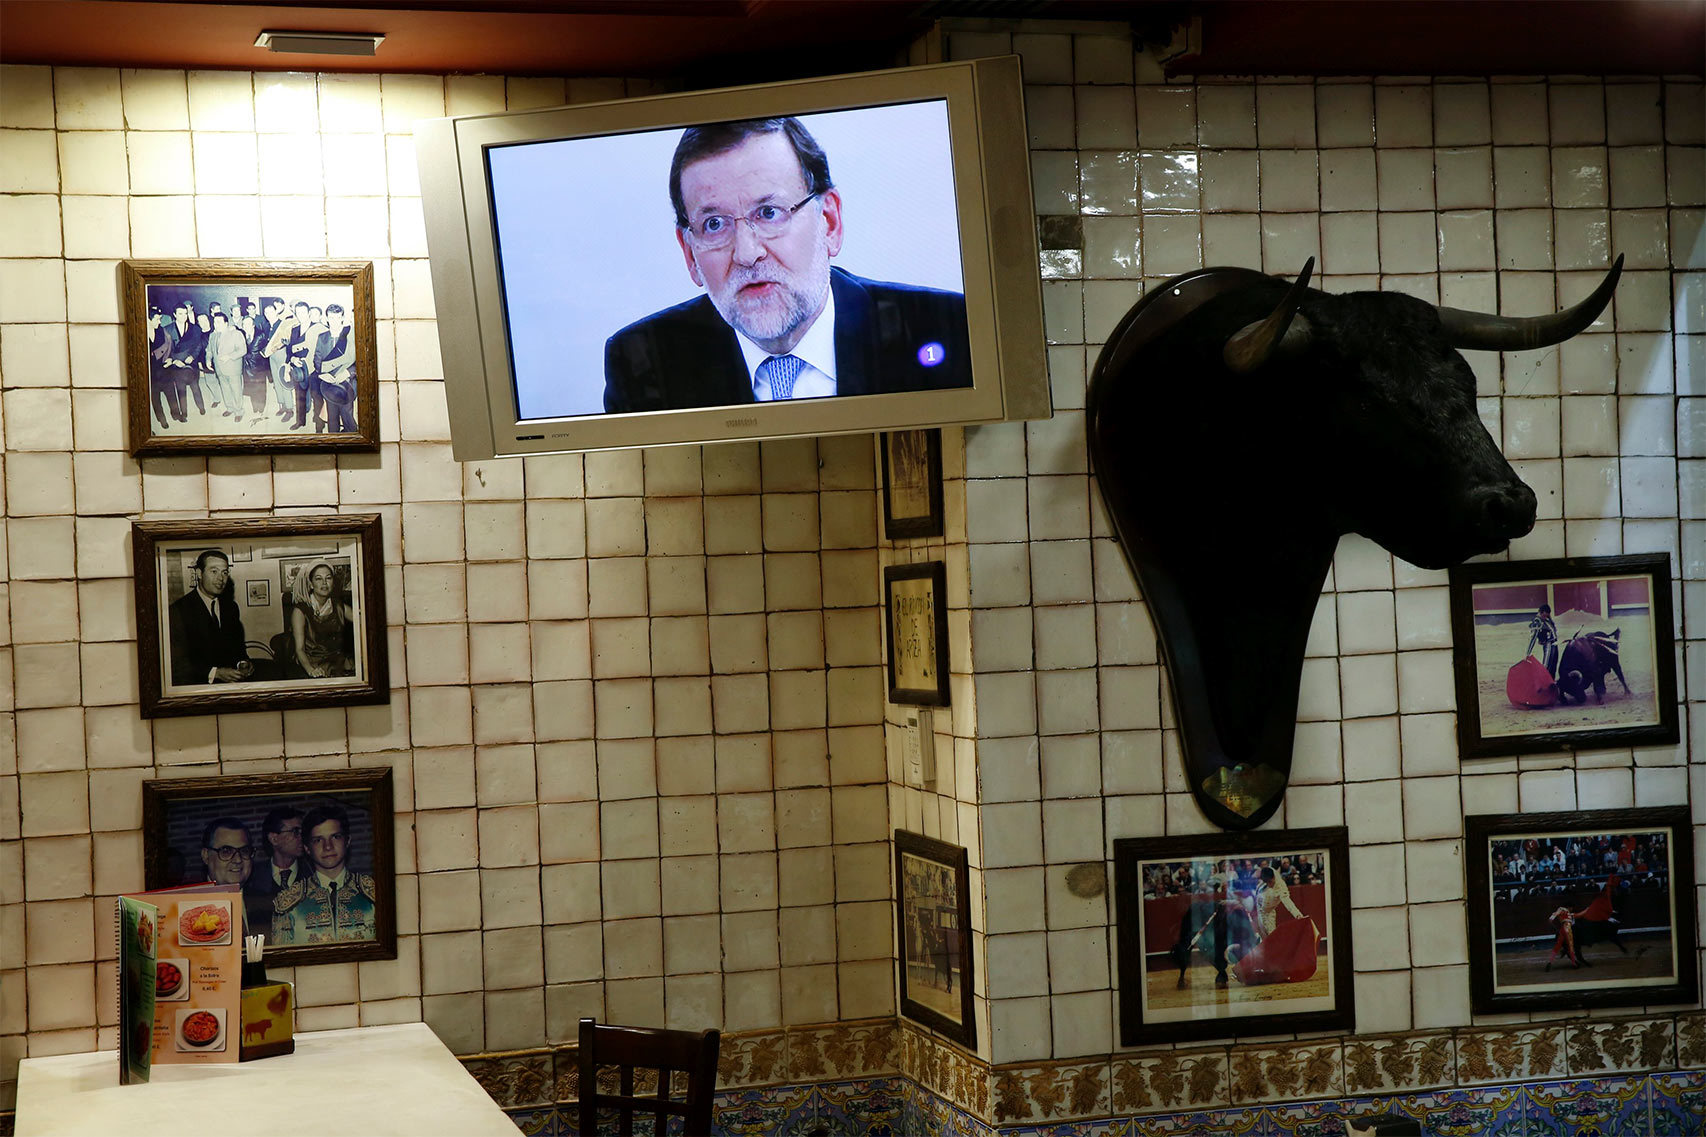 Una pantalla de plasma proyecta la imagen de Rajoy en un bar durante el debate.